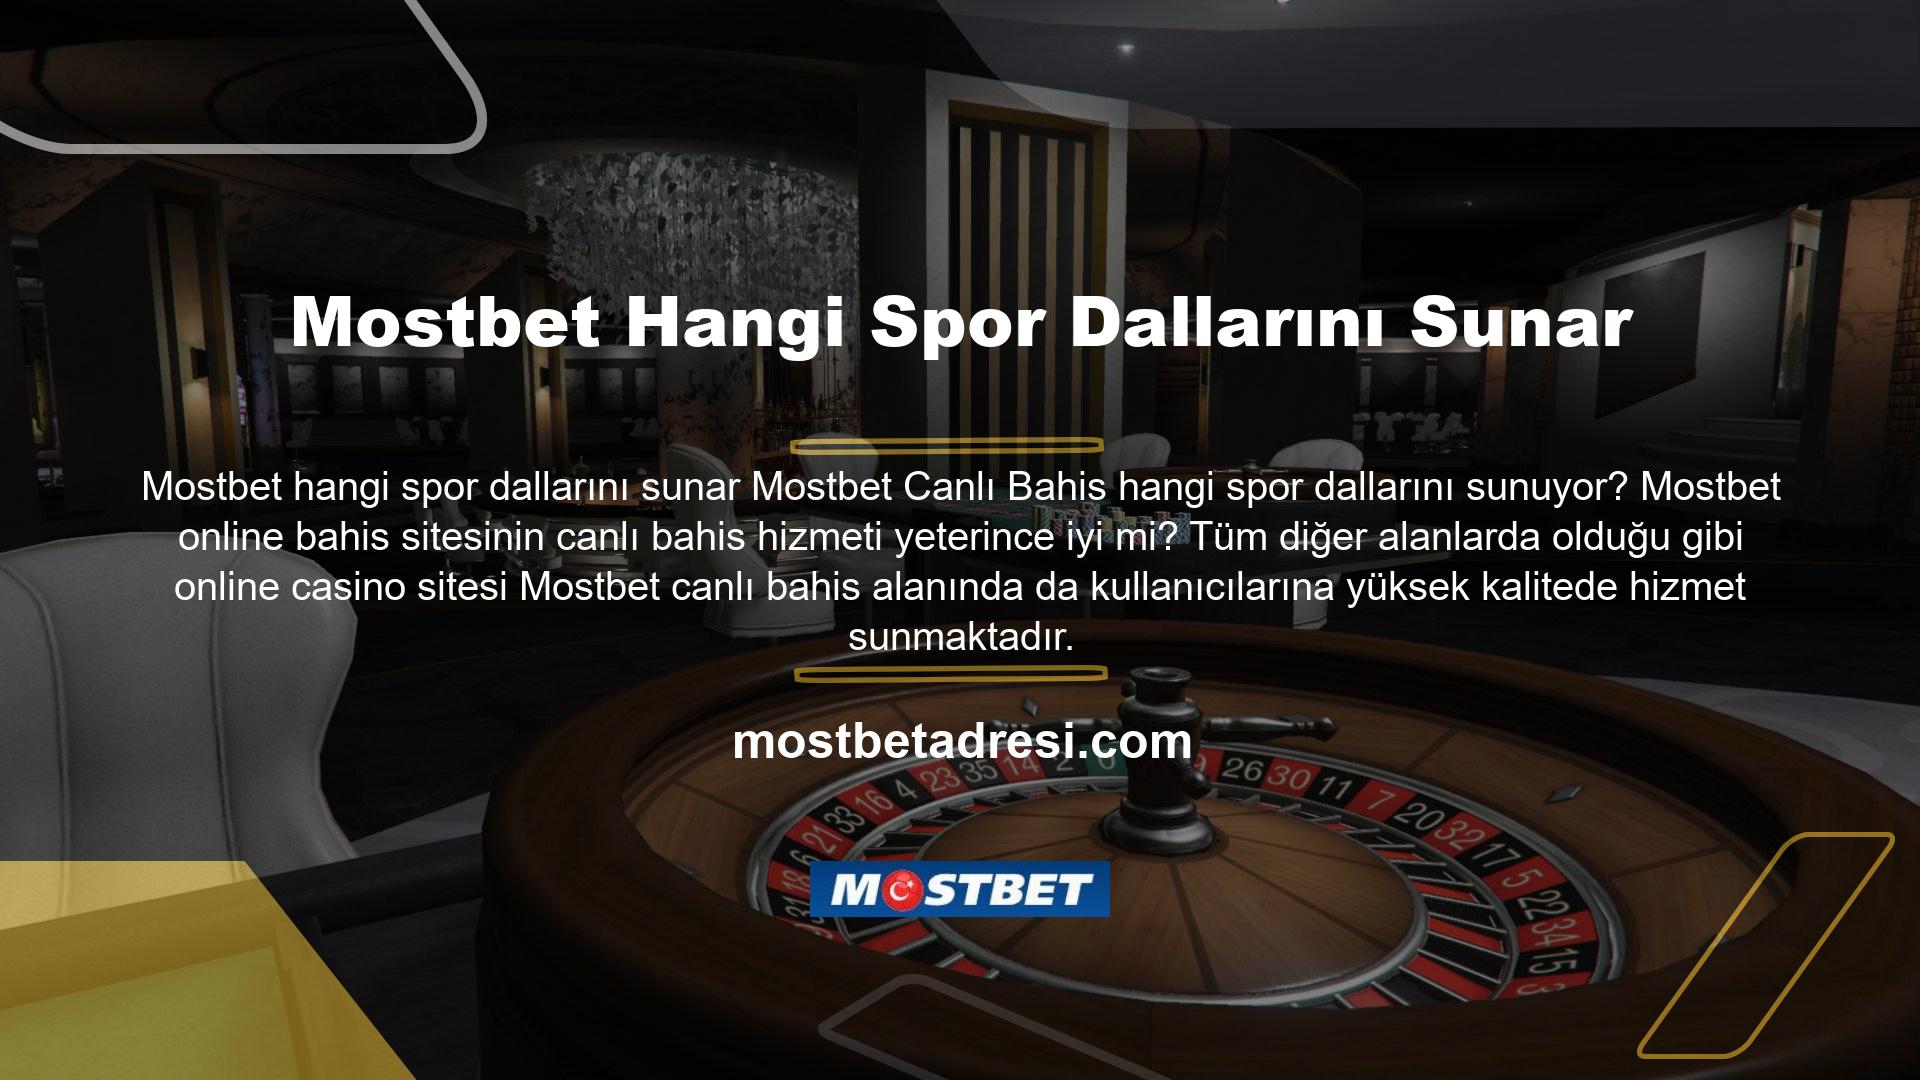 Bu sayede Mostbet online bahis, bu siteyi tercih eden bahis tutkunlarına kuponlarını birçok spor ortağıyla çok yüksek bahis oranlarıyla kullanma olanağı sağlıyor